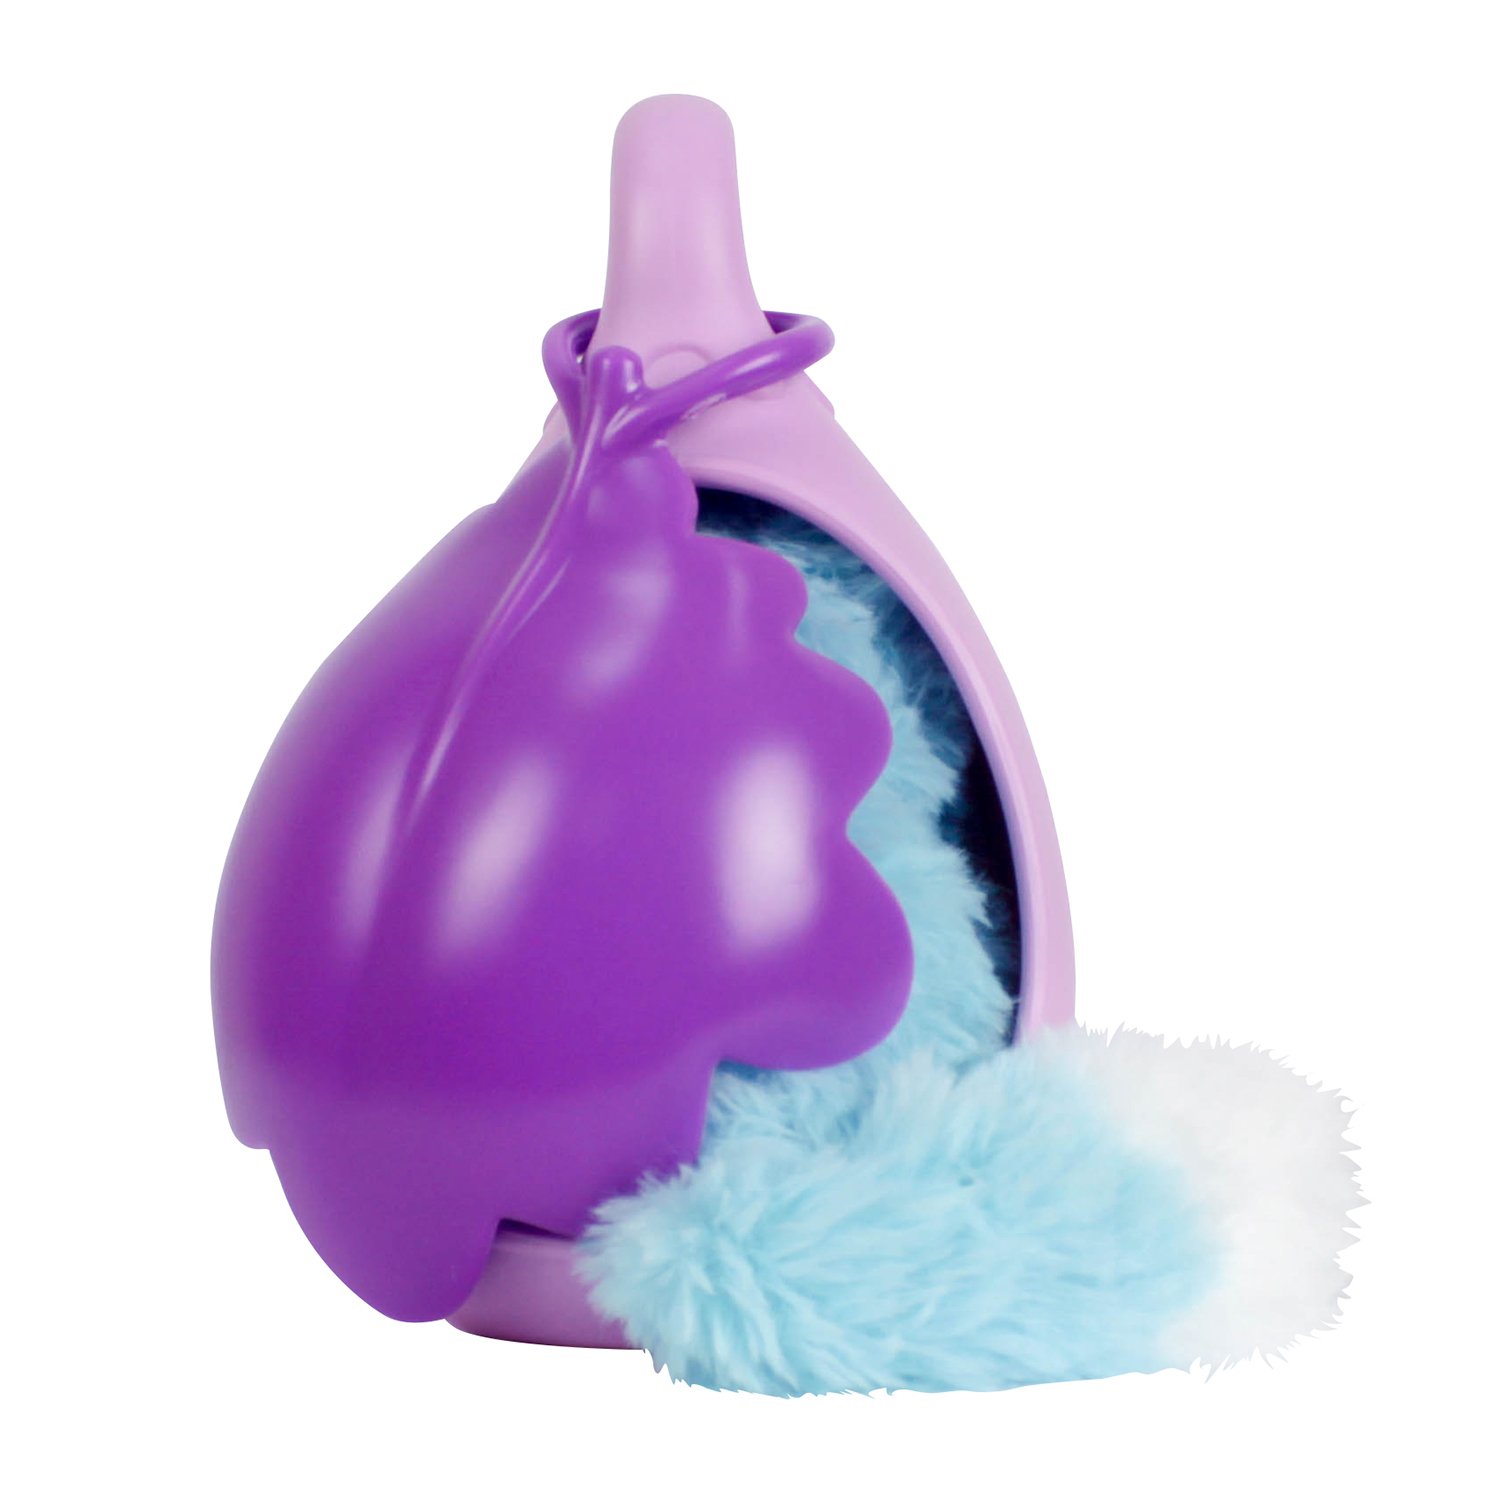 Мягкая игрушка Адеро из серии Bush baby world, 17 см., со спальным коконом  